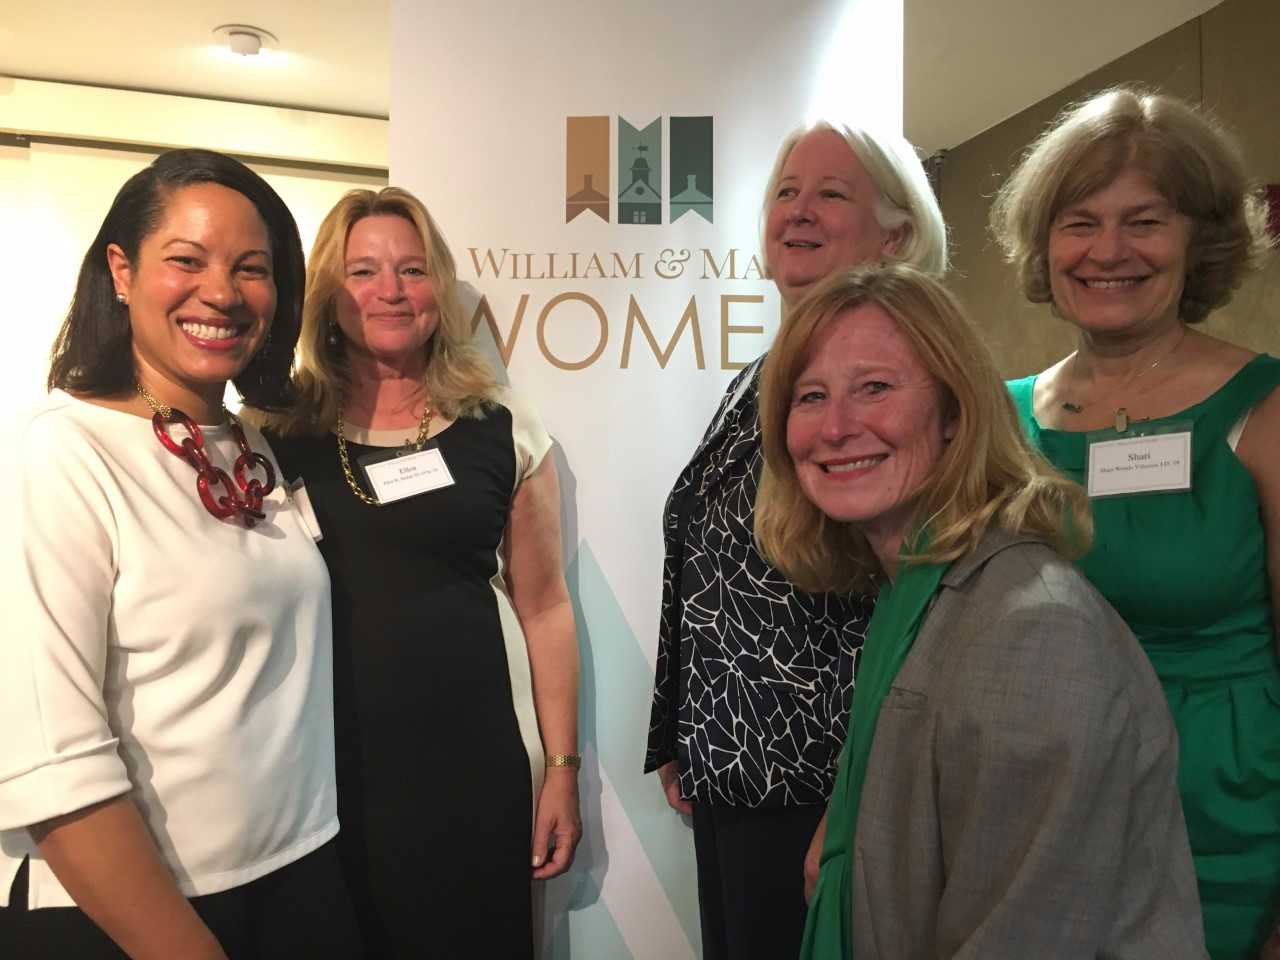 washington-womens-leadership-panel-draws-more-than-100-photo0.jpg